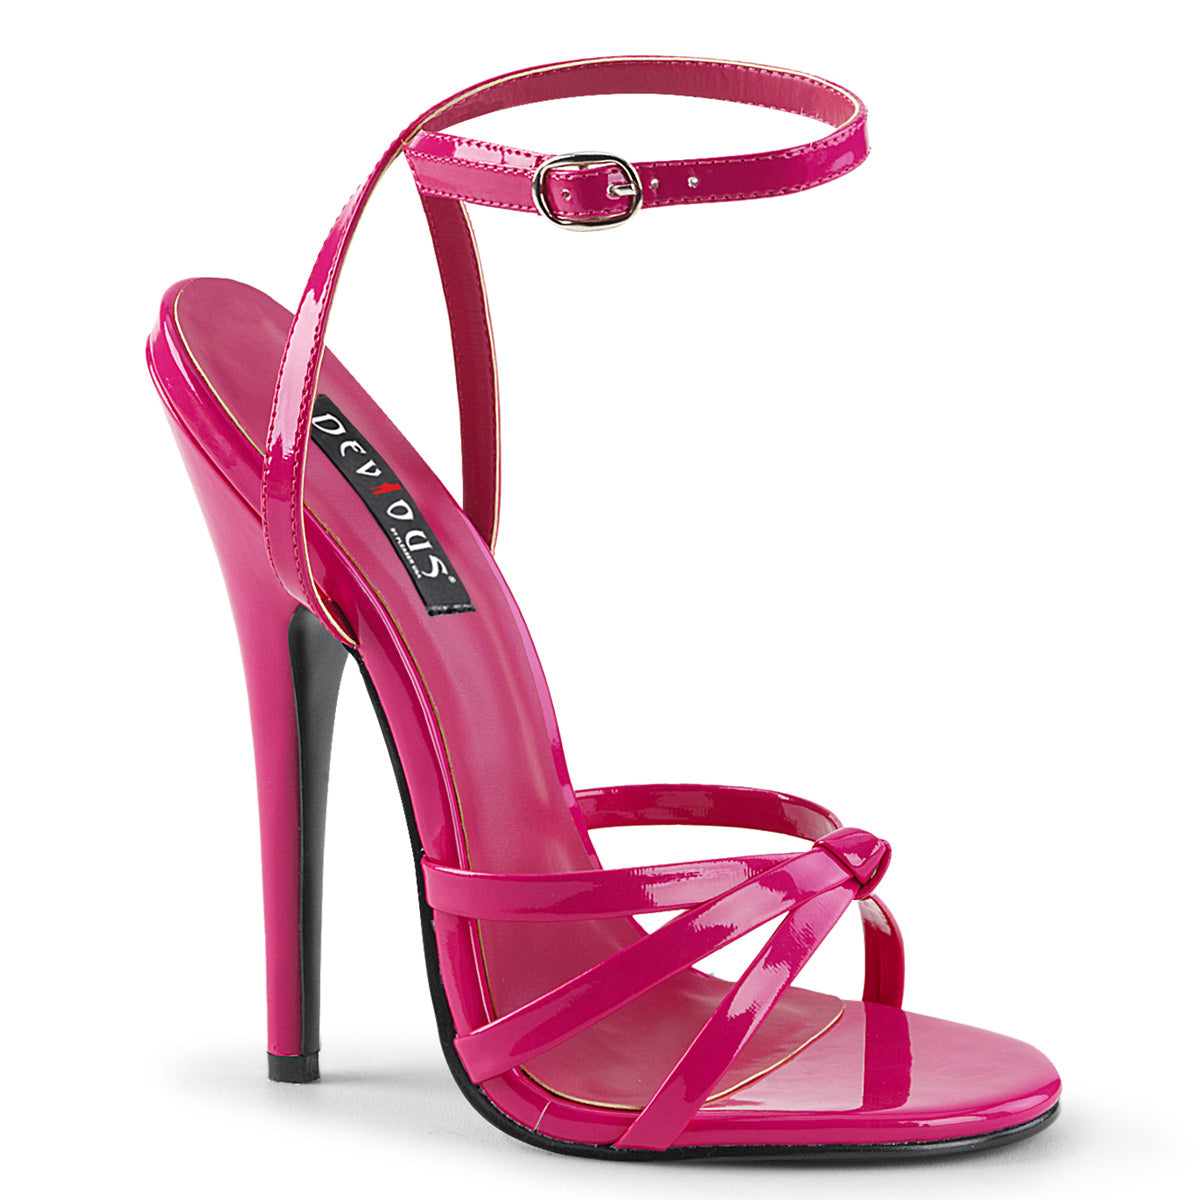 Domina-108 Dequide Fetish обувь 6 дюймов на каблуках горячая розовая обувь